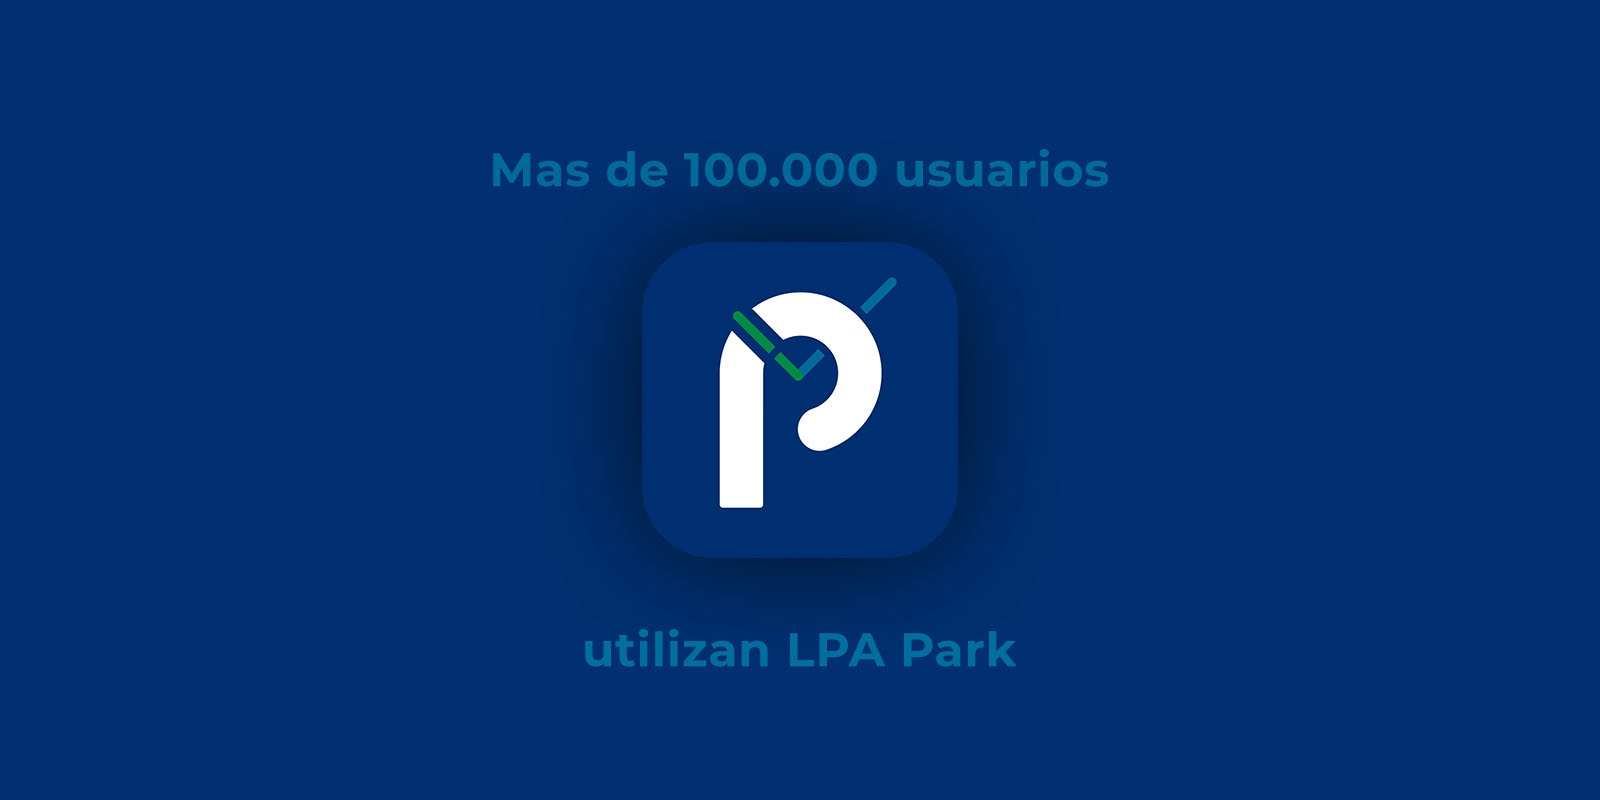 Más de 100.000 usuarios utilizan LPA Park